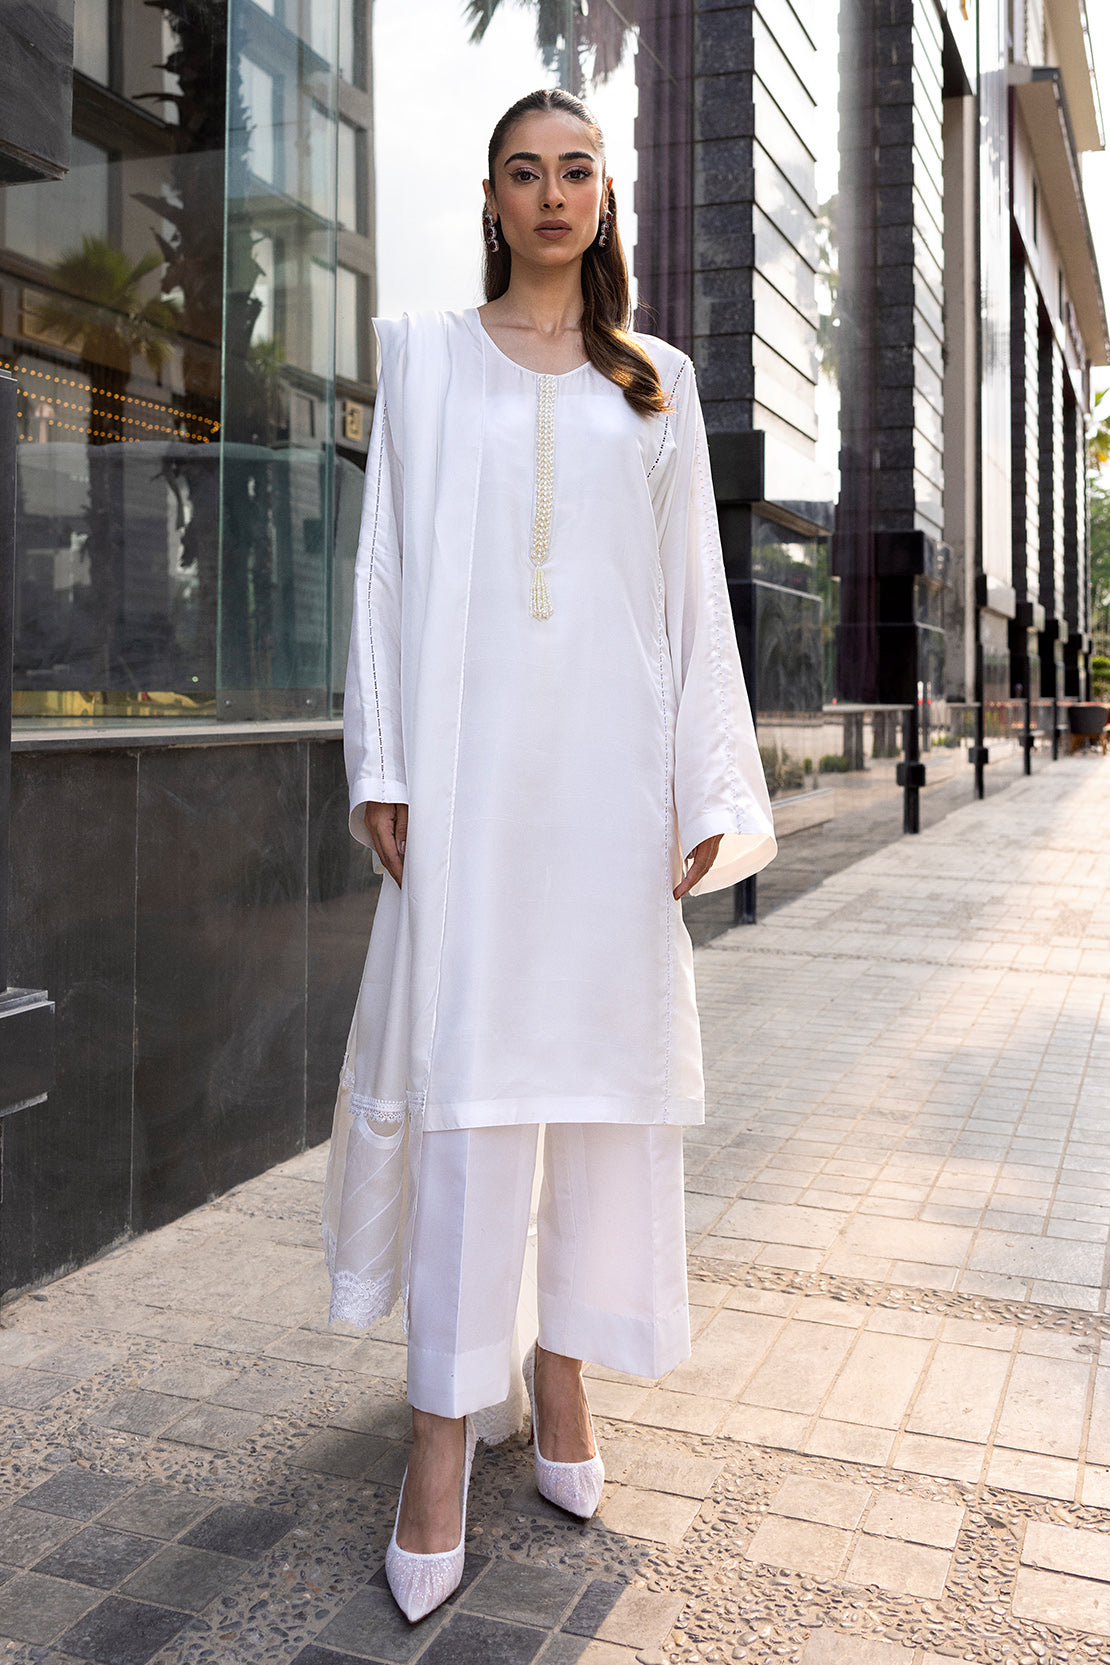 Buy Now - Peral White - Ayesha Shoaib Malik - Essentials - Shahana Collection UK - Wedding and Bridal Party Dresses - Shahana UK 